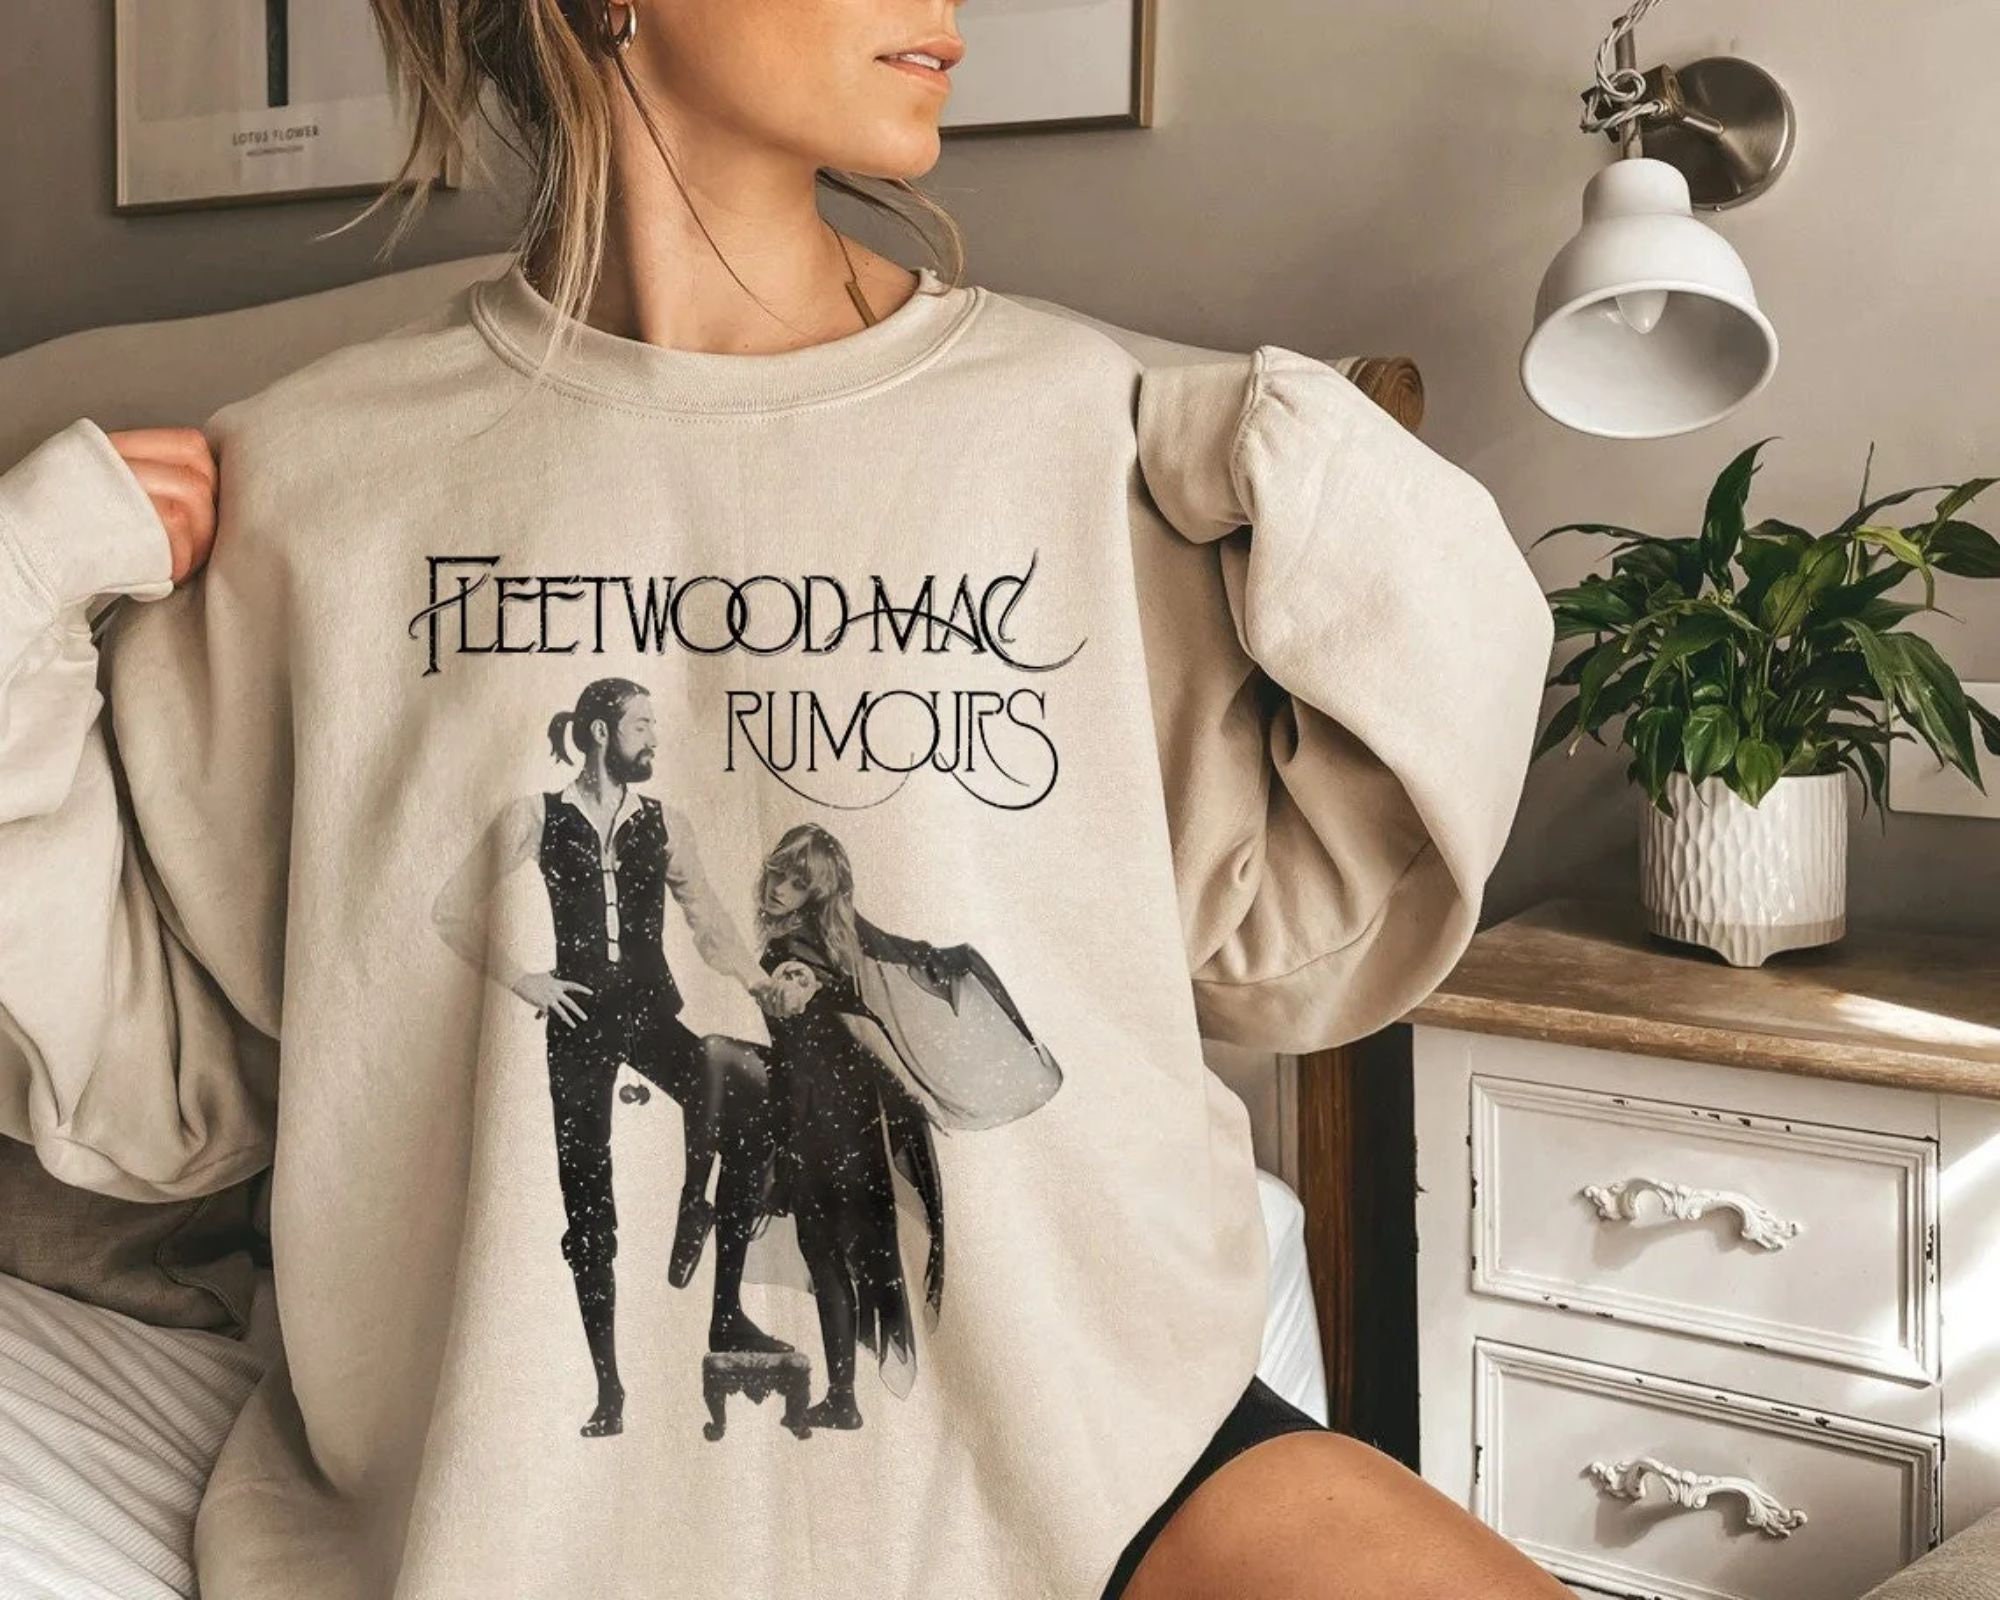 Discover Fleetwood Mac Rumours Unisex Sweatshirt, Music Rock Band Sweatshirt